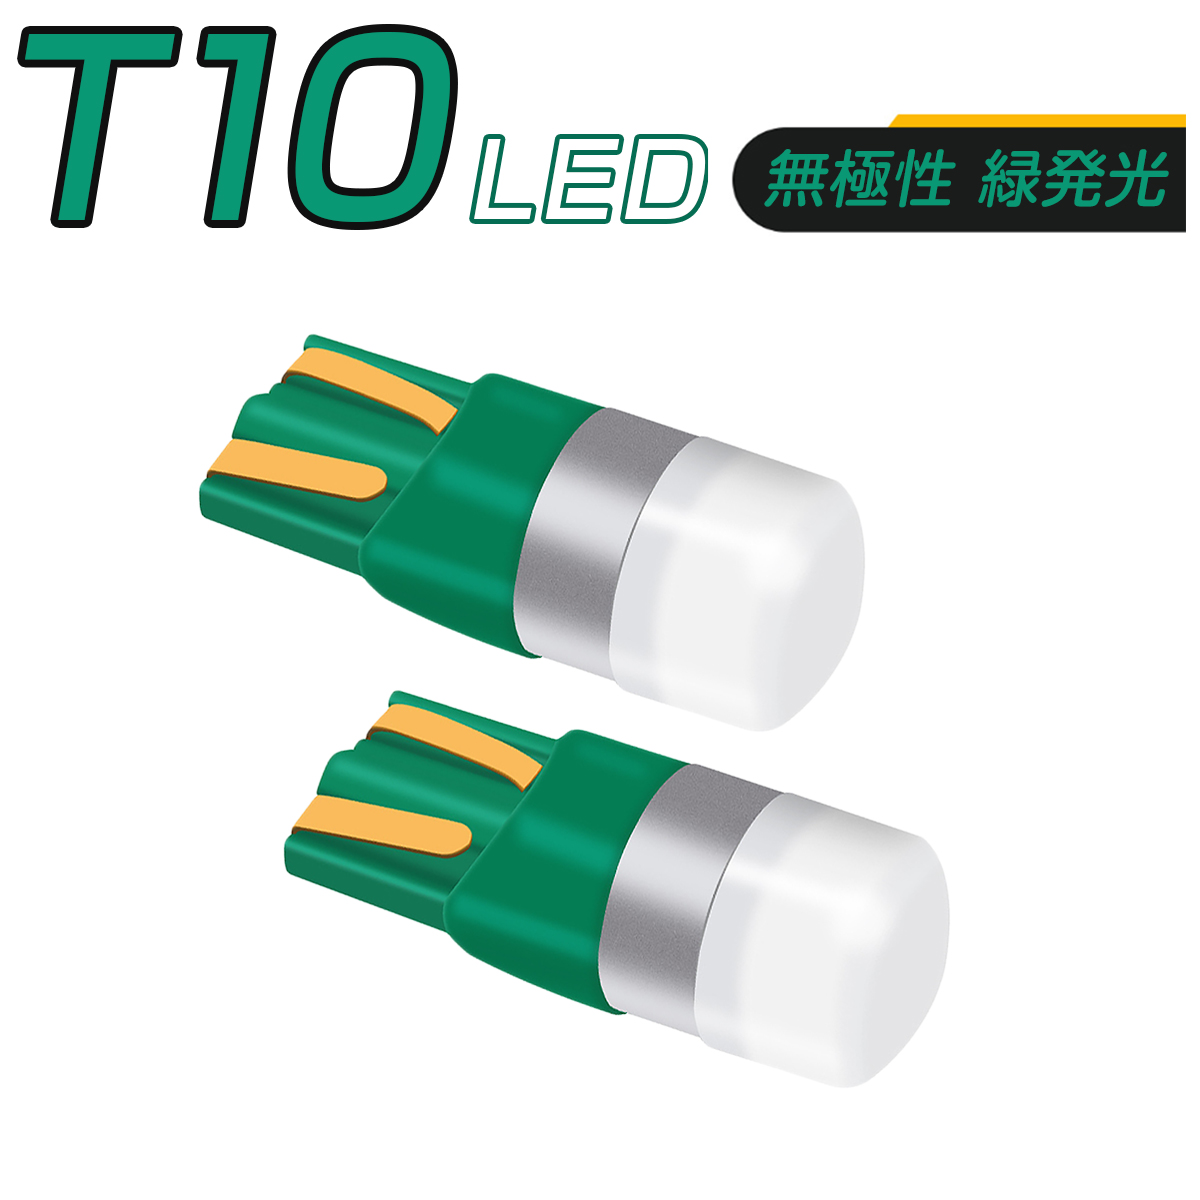 LED 緑 T10 T13 T15 T16 汎用 1SMD 3030 キャンセラー付き 150LM 12V/24V 無極性 2個セット 外車対応 SDM便送料無料 3ヶ月保証